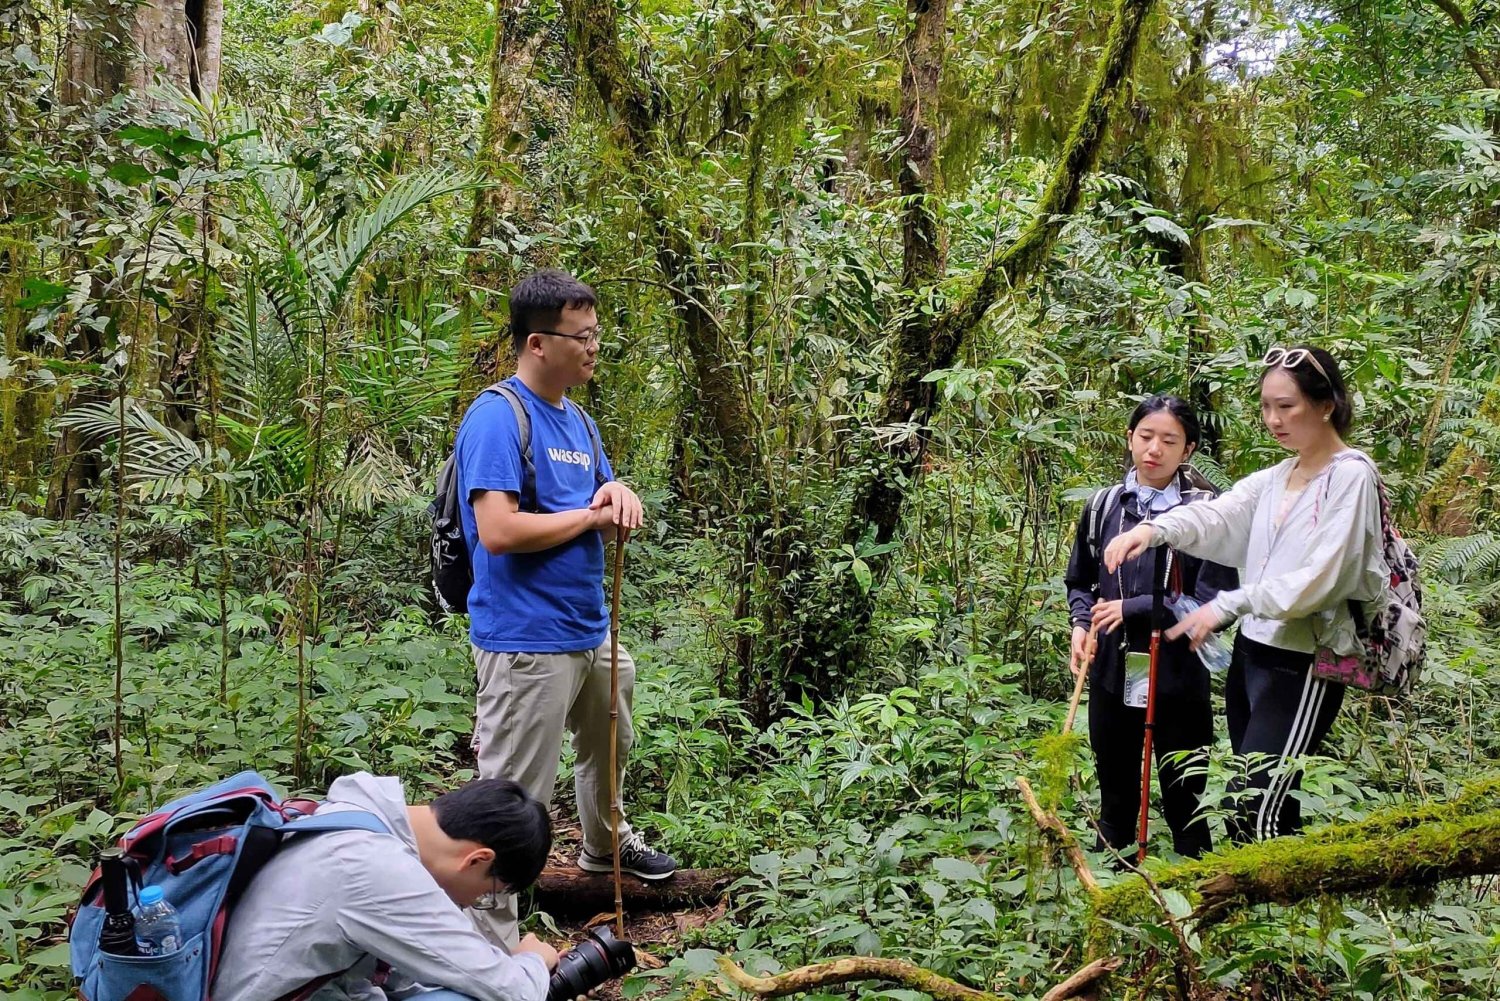 Munduk: Trekking nella giungla, canoa e lezione di cucina balinese